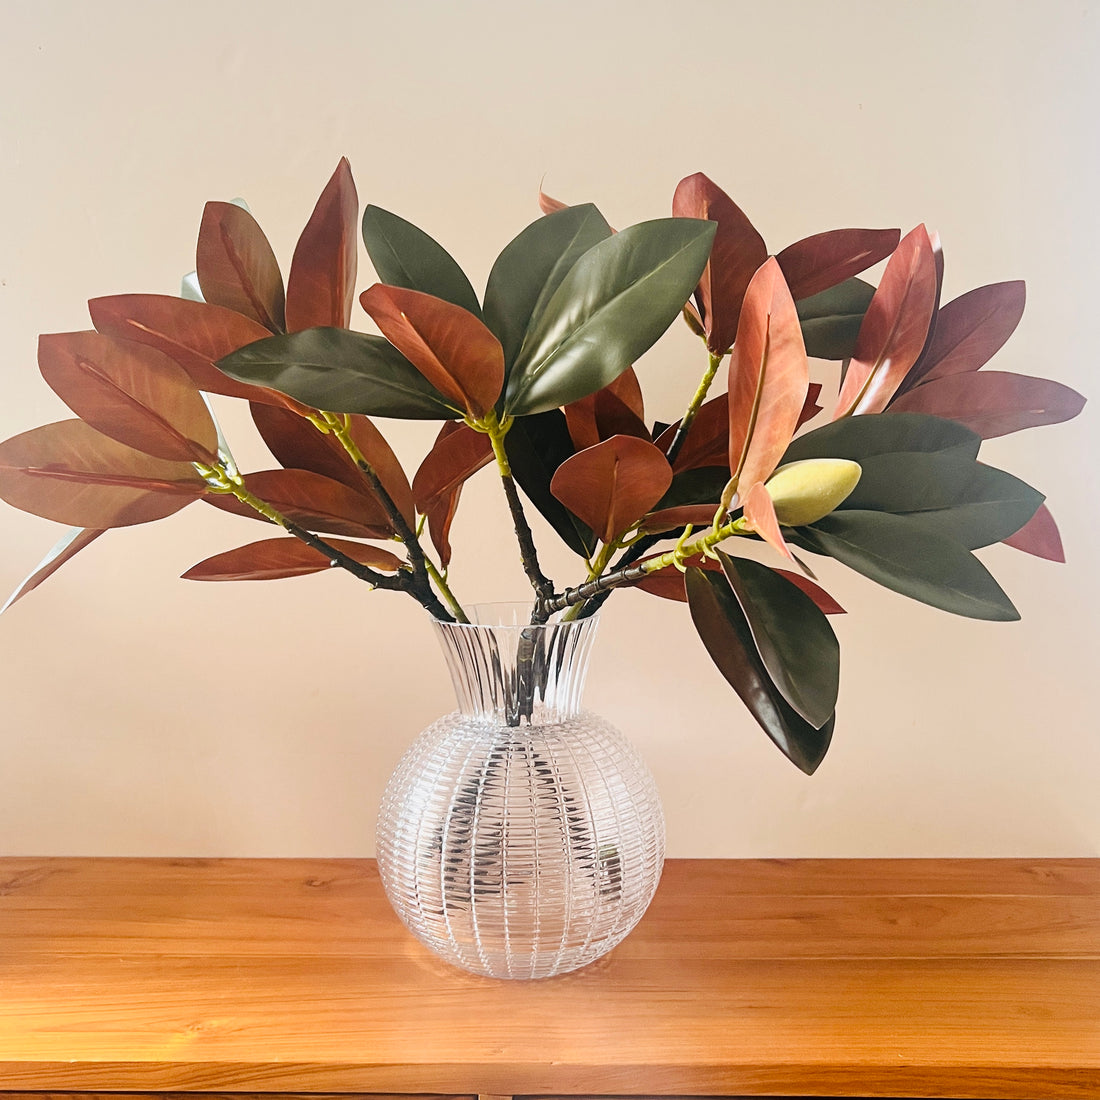 Magnolia arrangement